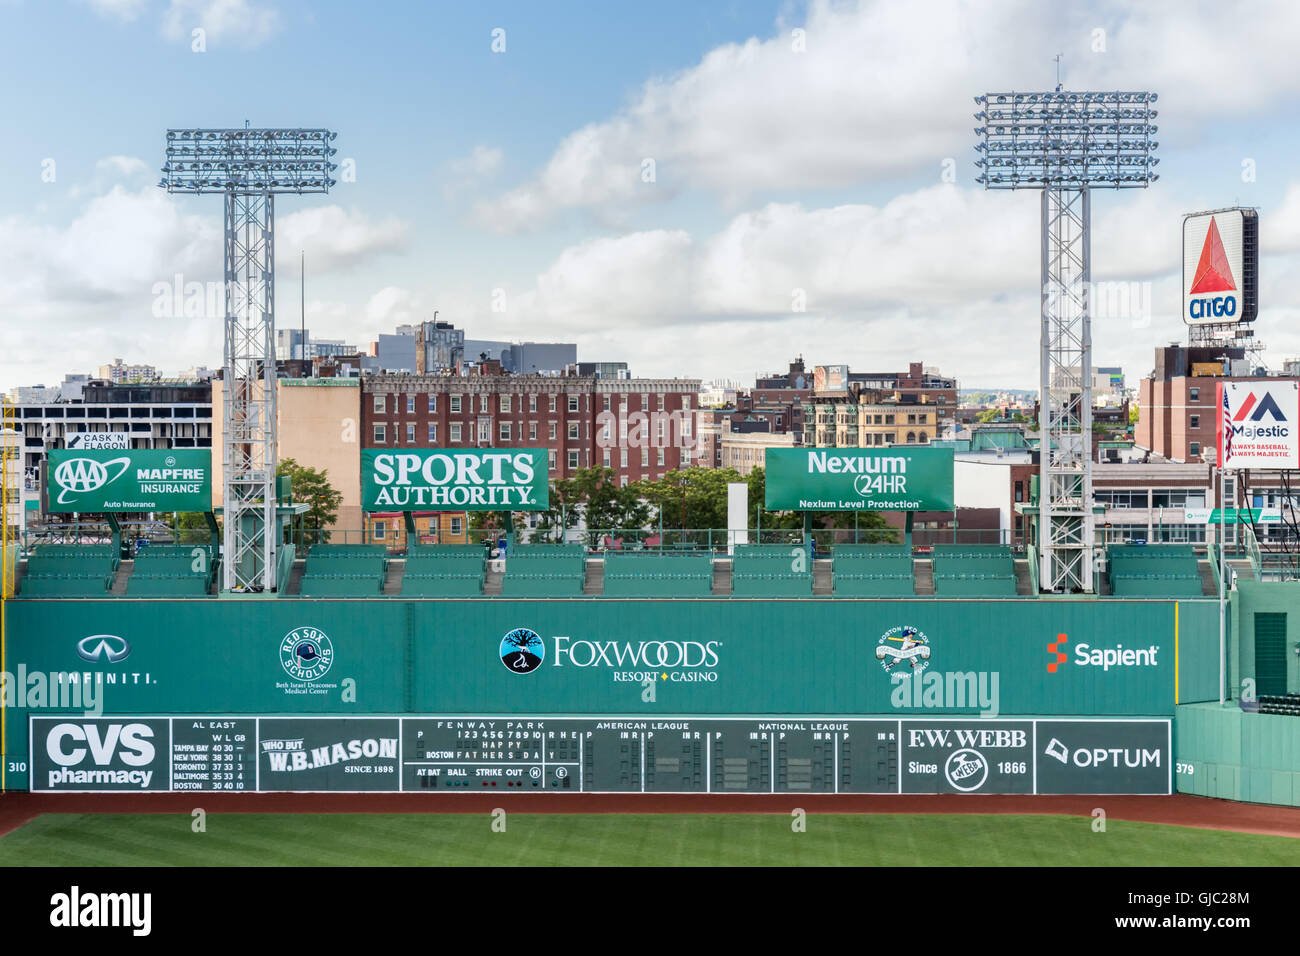 The Green Monster of Fenway Park, Boston, Massachusetts Stock Photo